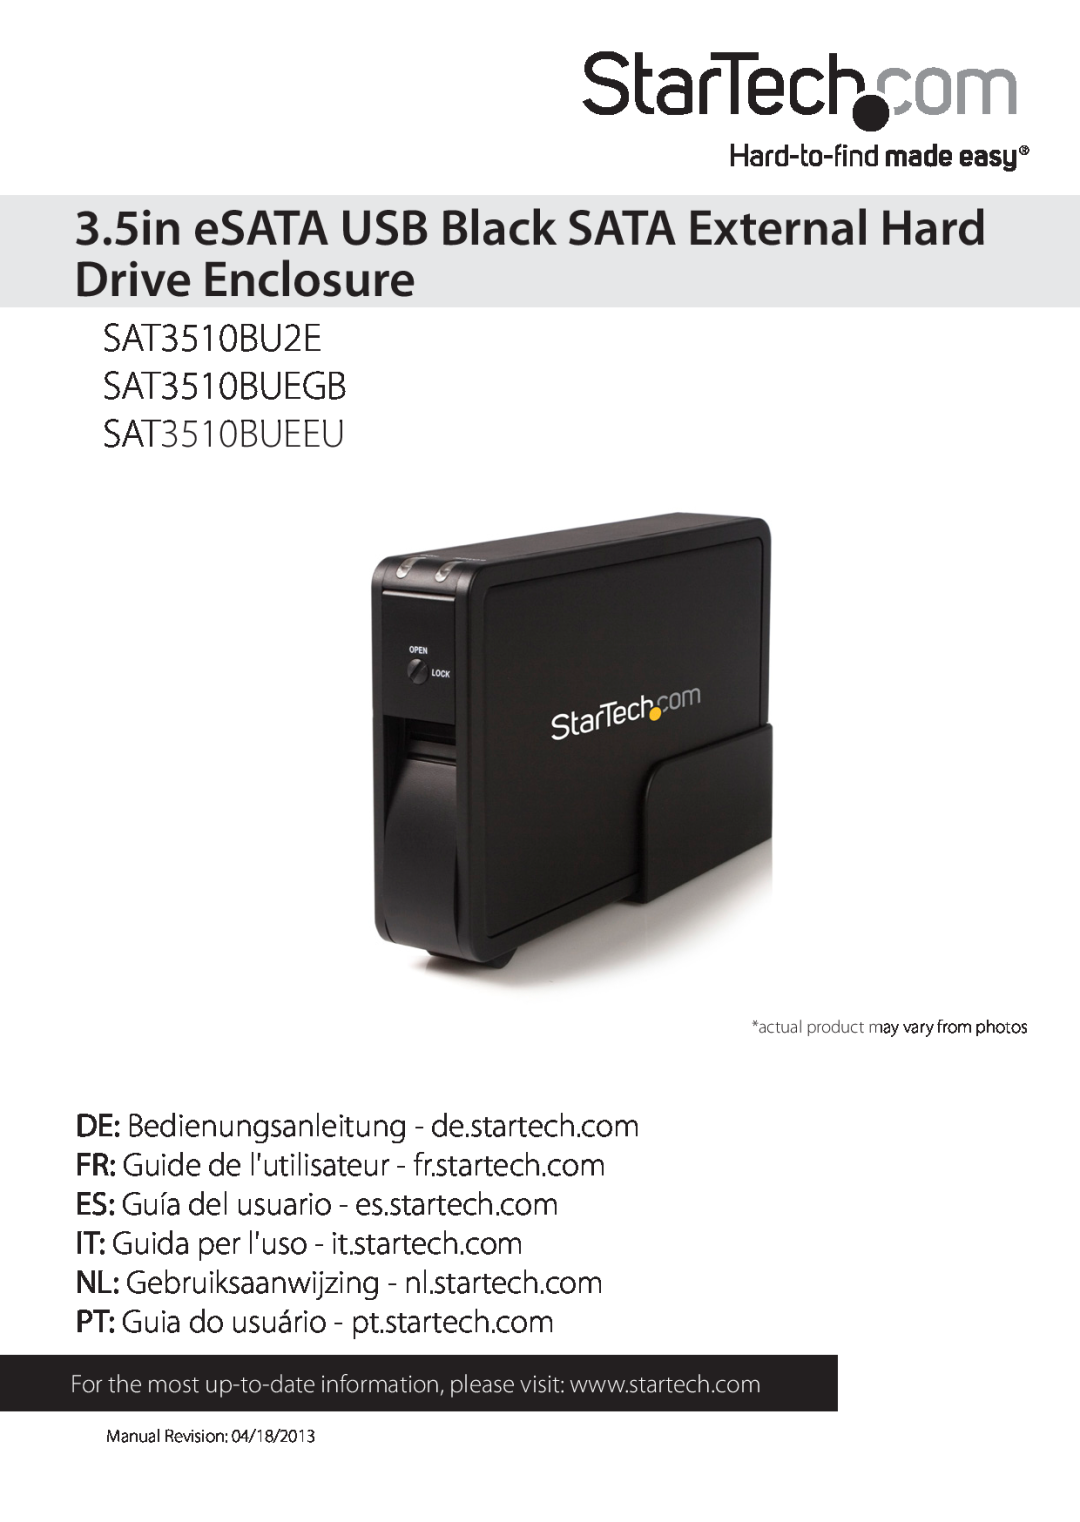 StarTech.com SAT3510BUEEU manual 3.5in eSATA USB Black SATA External Hard Drive Enclosure, Manual Revision 04/18/2013 